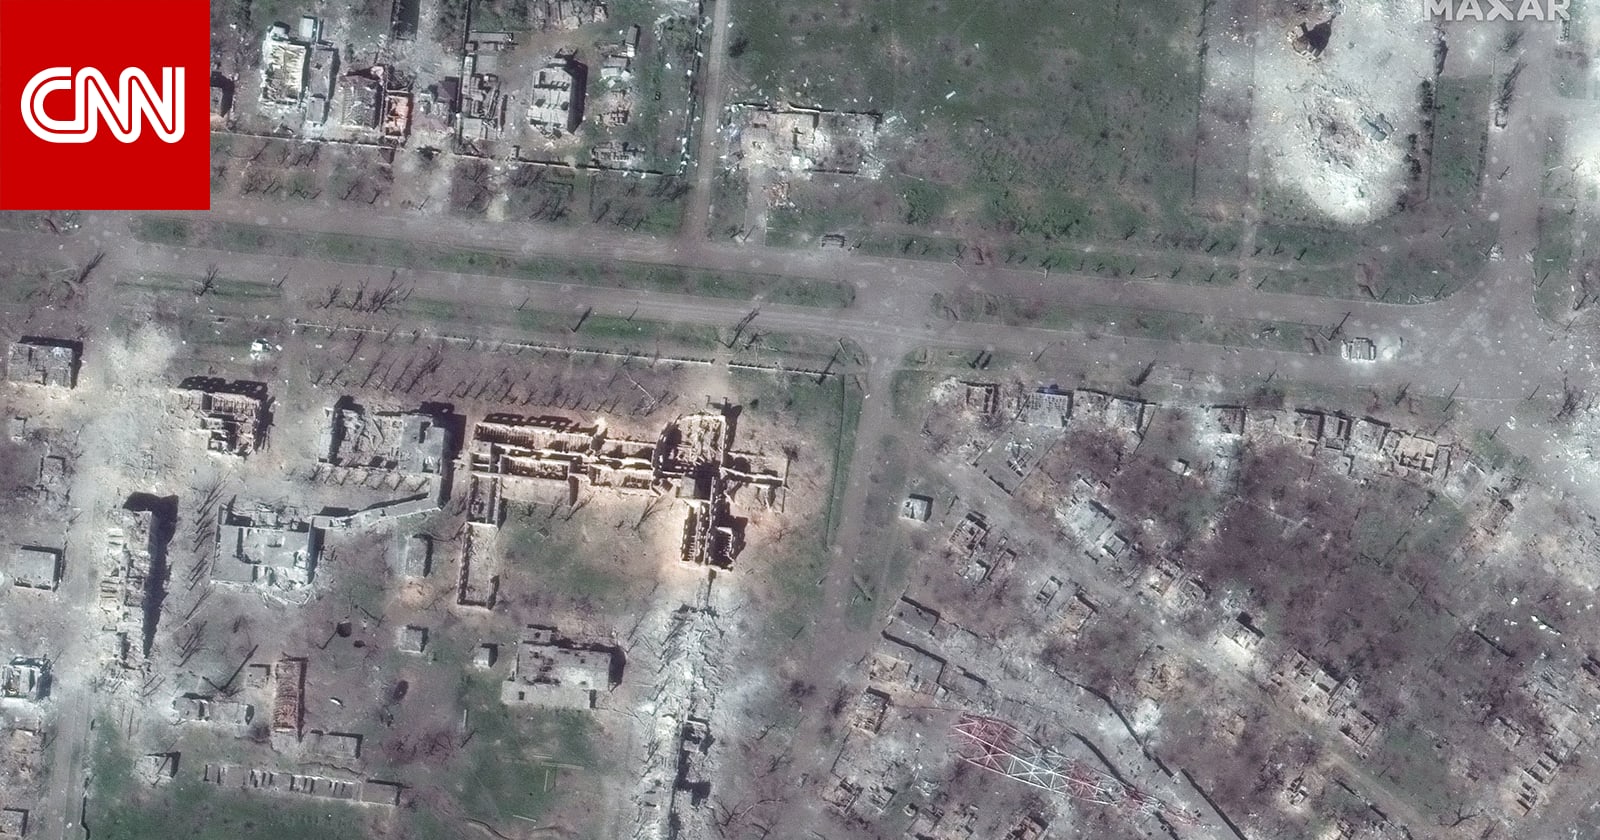 قبل وبعد.. صور الأقمار الصناعية تظهر حجم الدمار في مدينة باخموت الأوكرانية المحاصرة